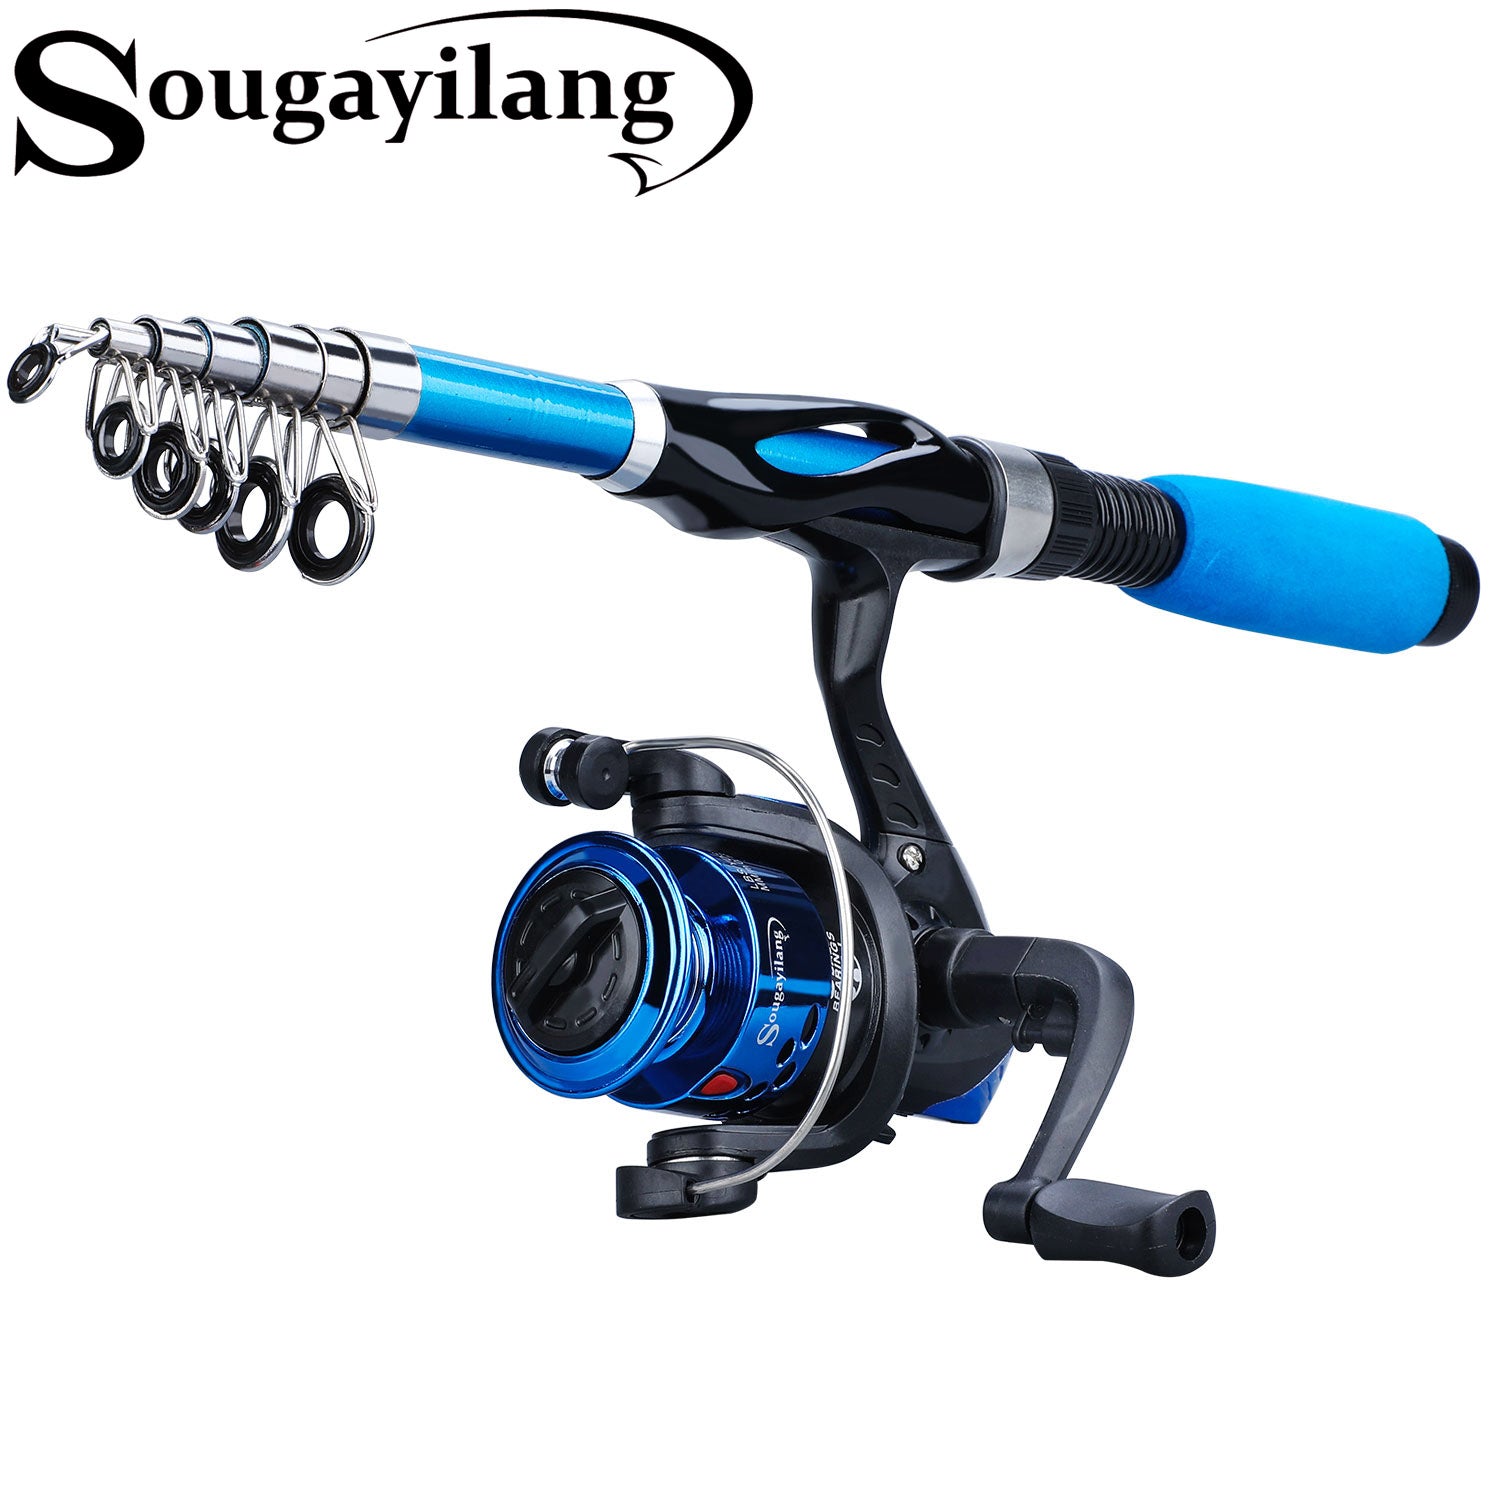 Sougayilang 1.2/2.1M Portable Fishing Rod Reel Set 2 Section Lure Rod with  6BB 5.2:1 High Speed Fishing Reel Gear and Fishing Reel Combo Set for Carp  Fishing Rod joran pancing